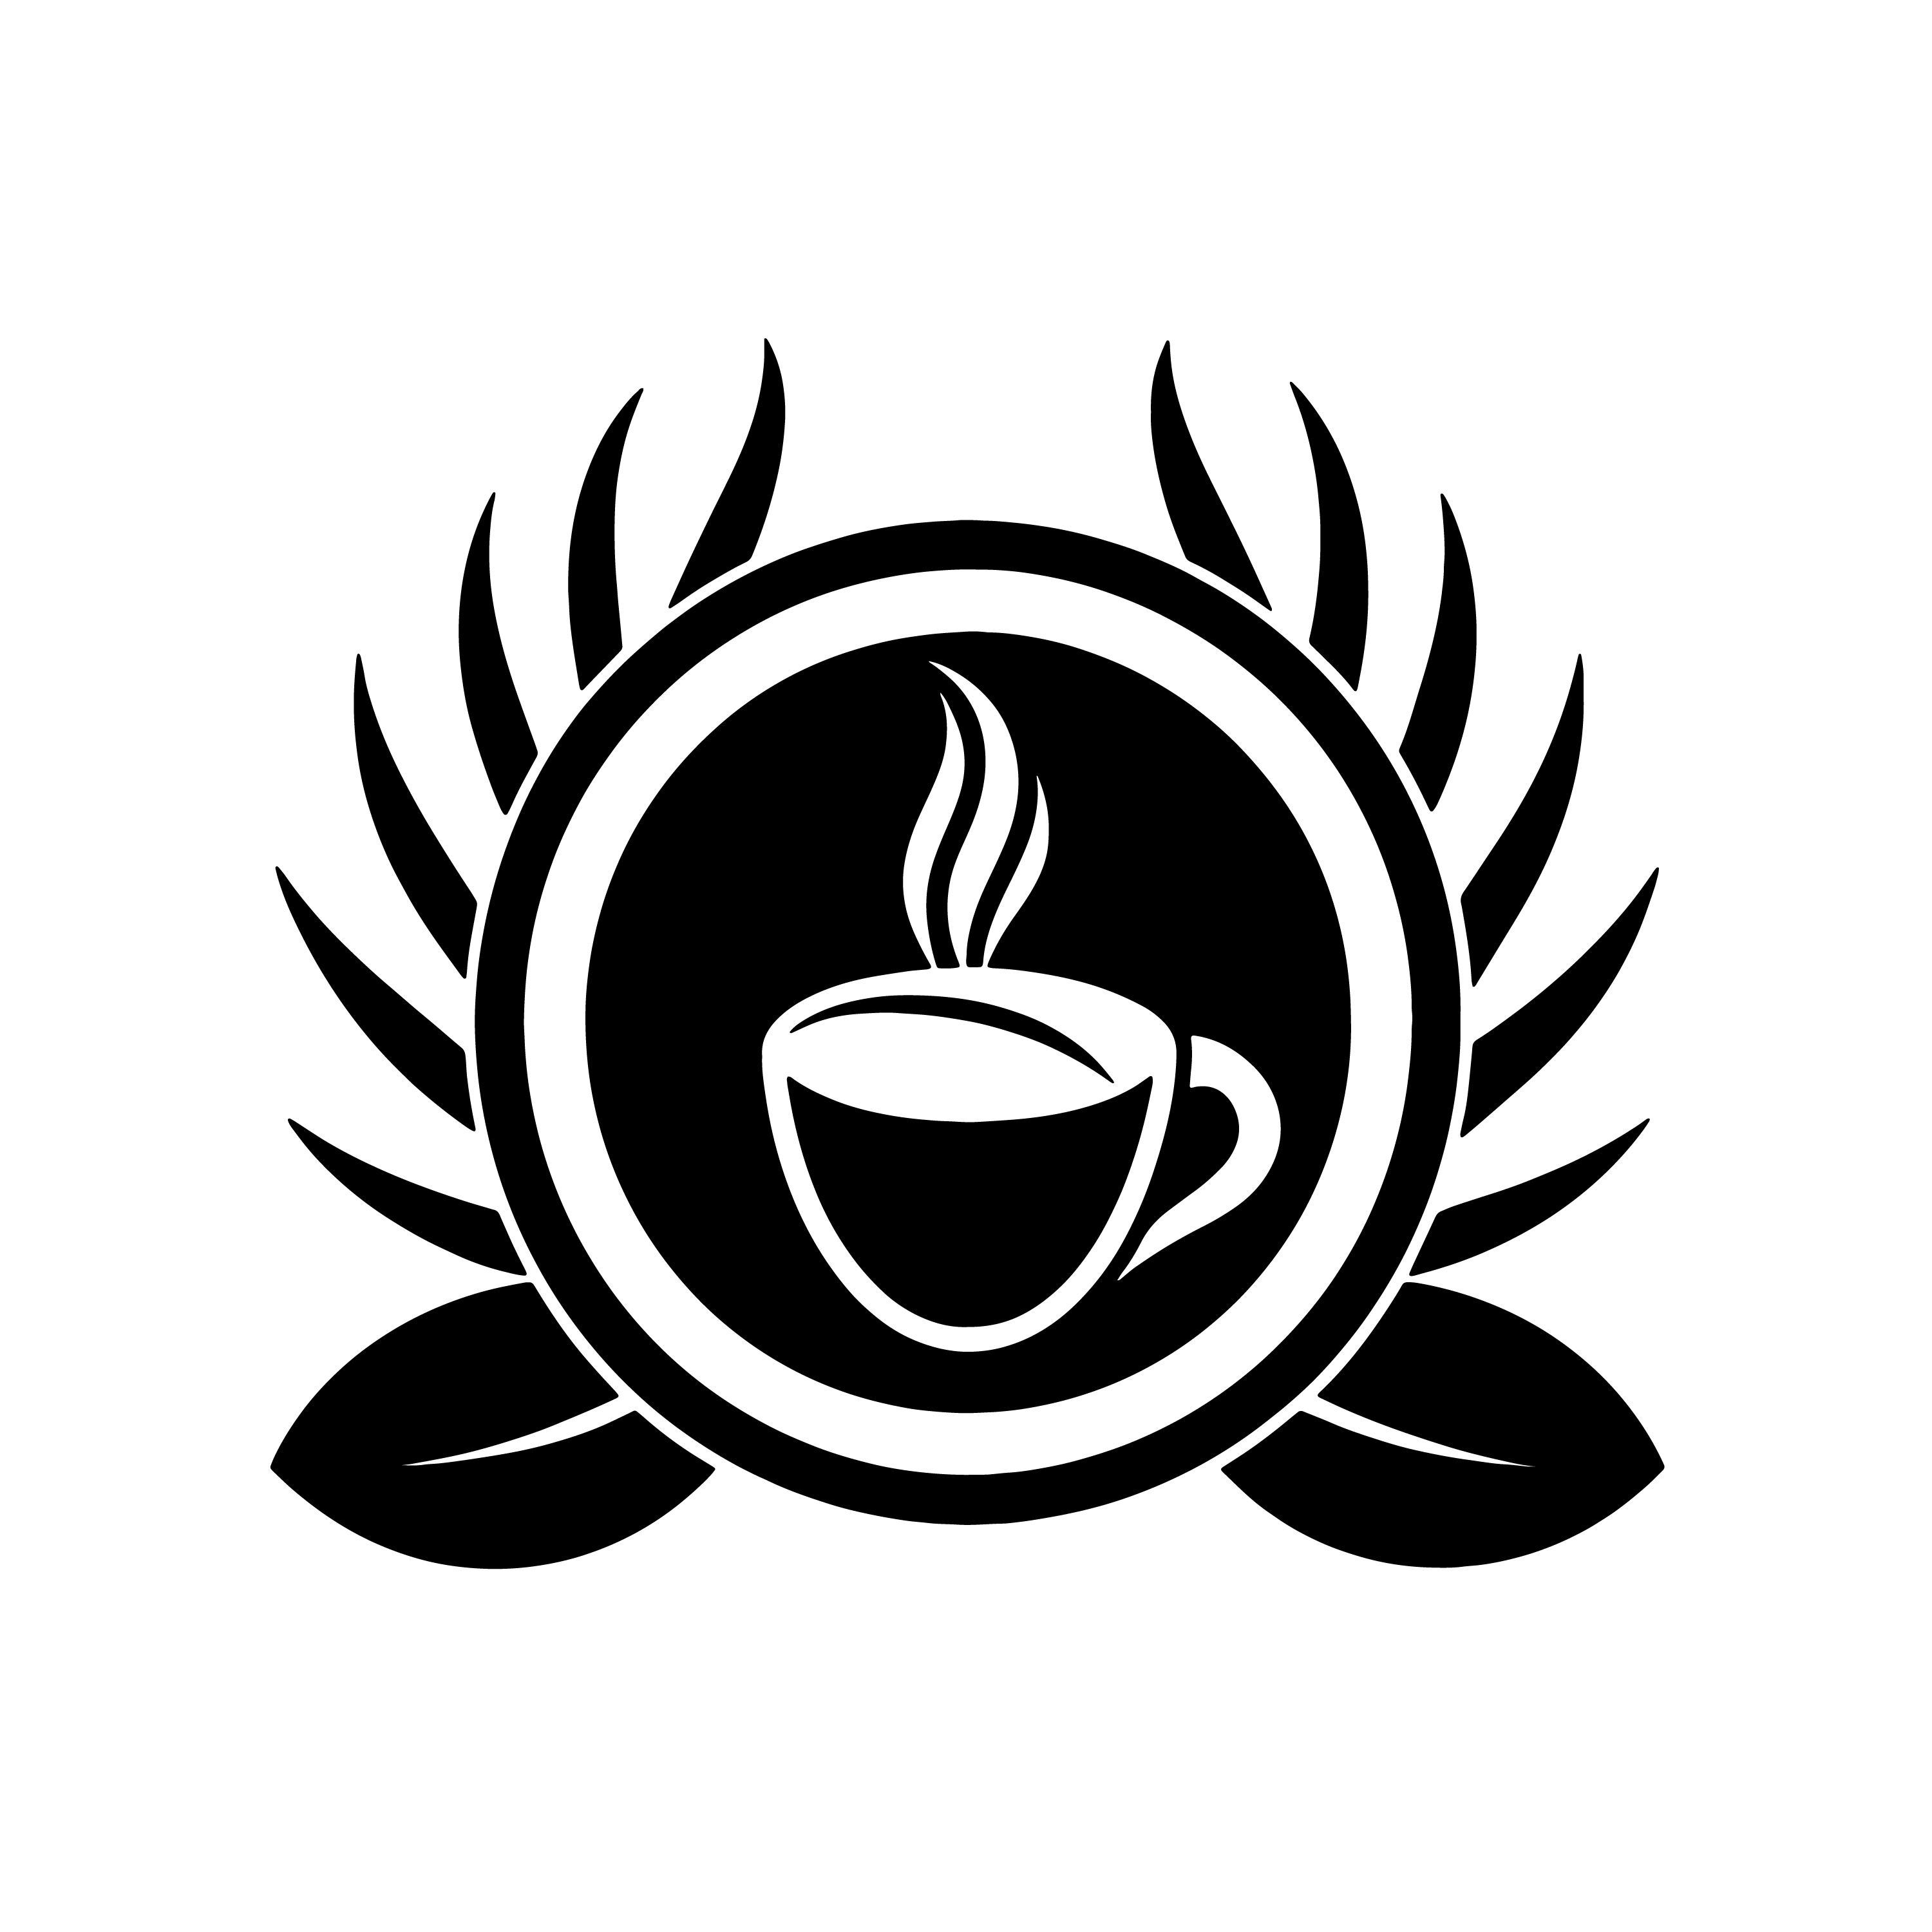 Logo for Coffee Shop, Tea shop, Cafeteria cover image.